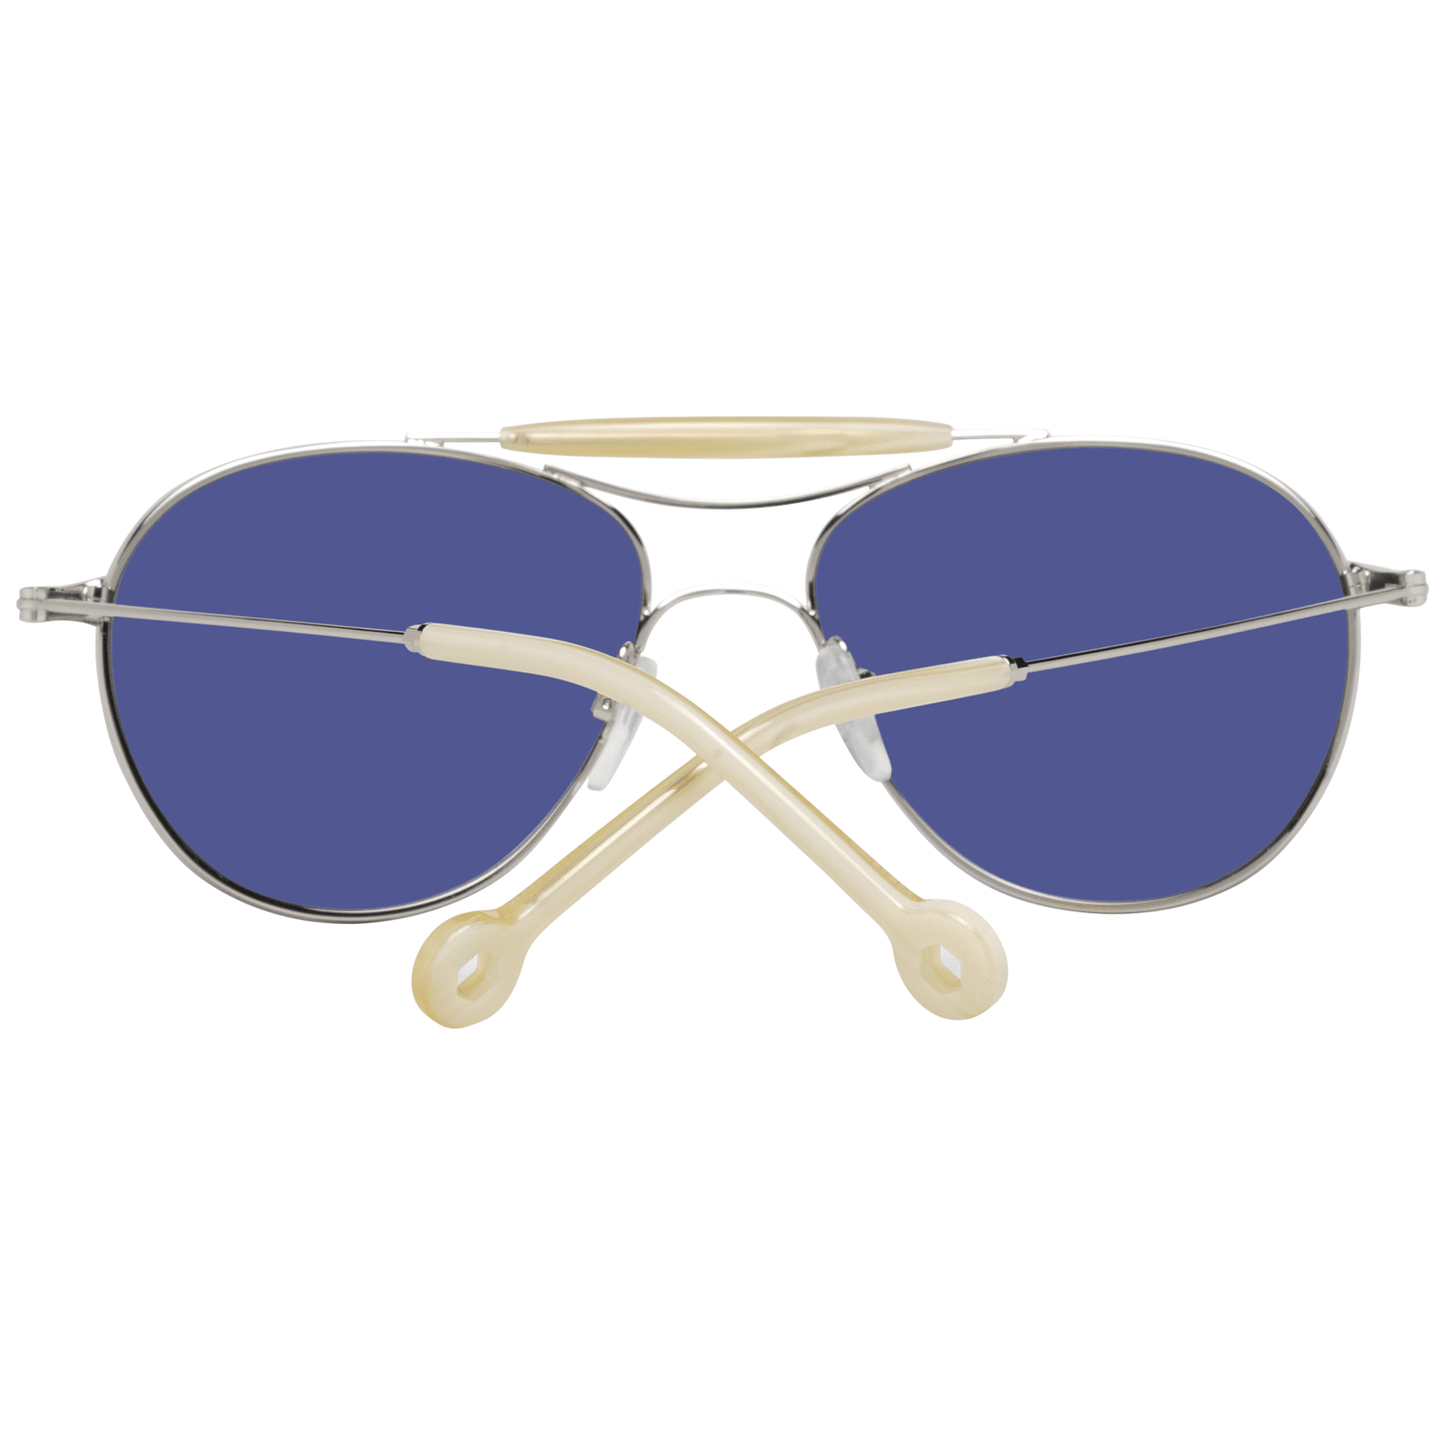 Hally & Son Silver Unisex Sunglasses - DEA STILOSA MILANO